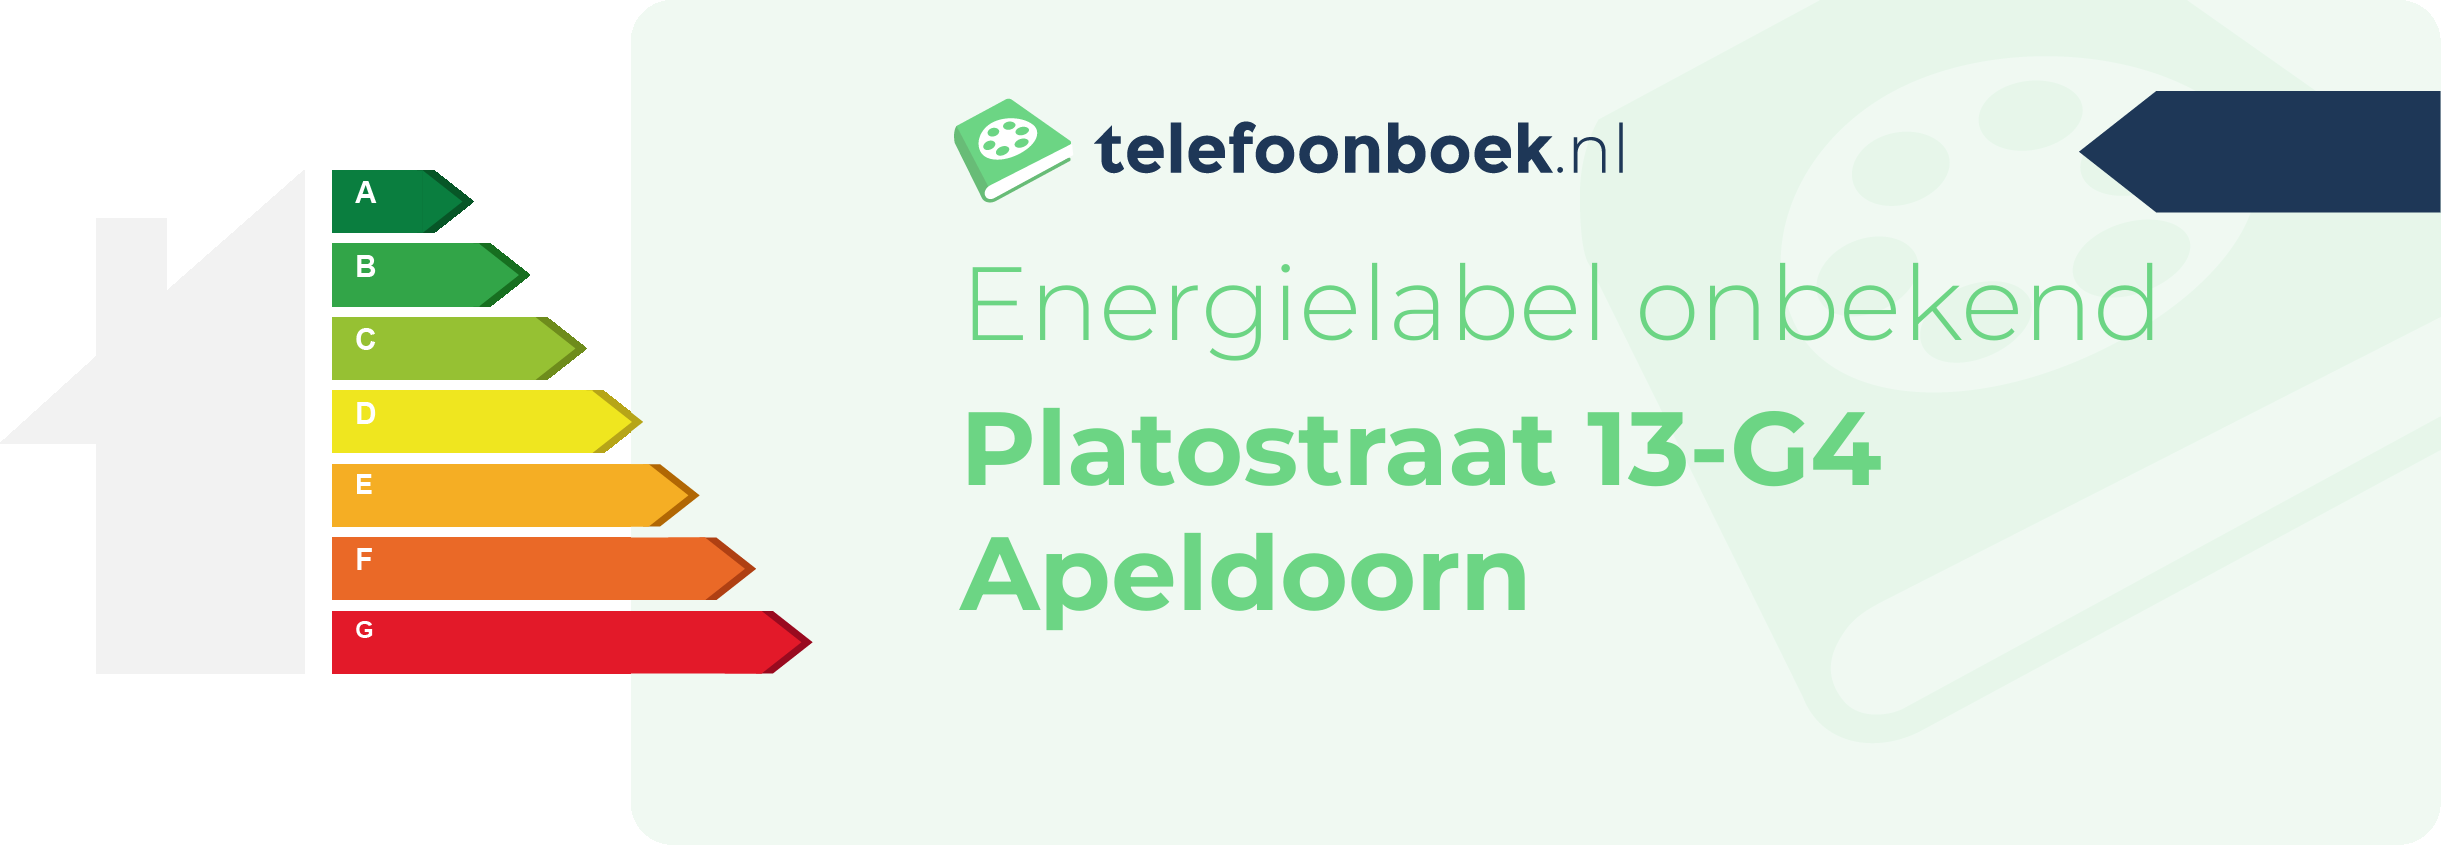 Energielabel Platostraat 13-G4 Apeldoorn